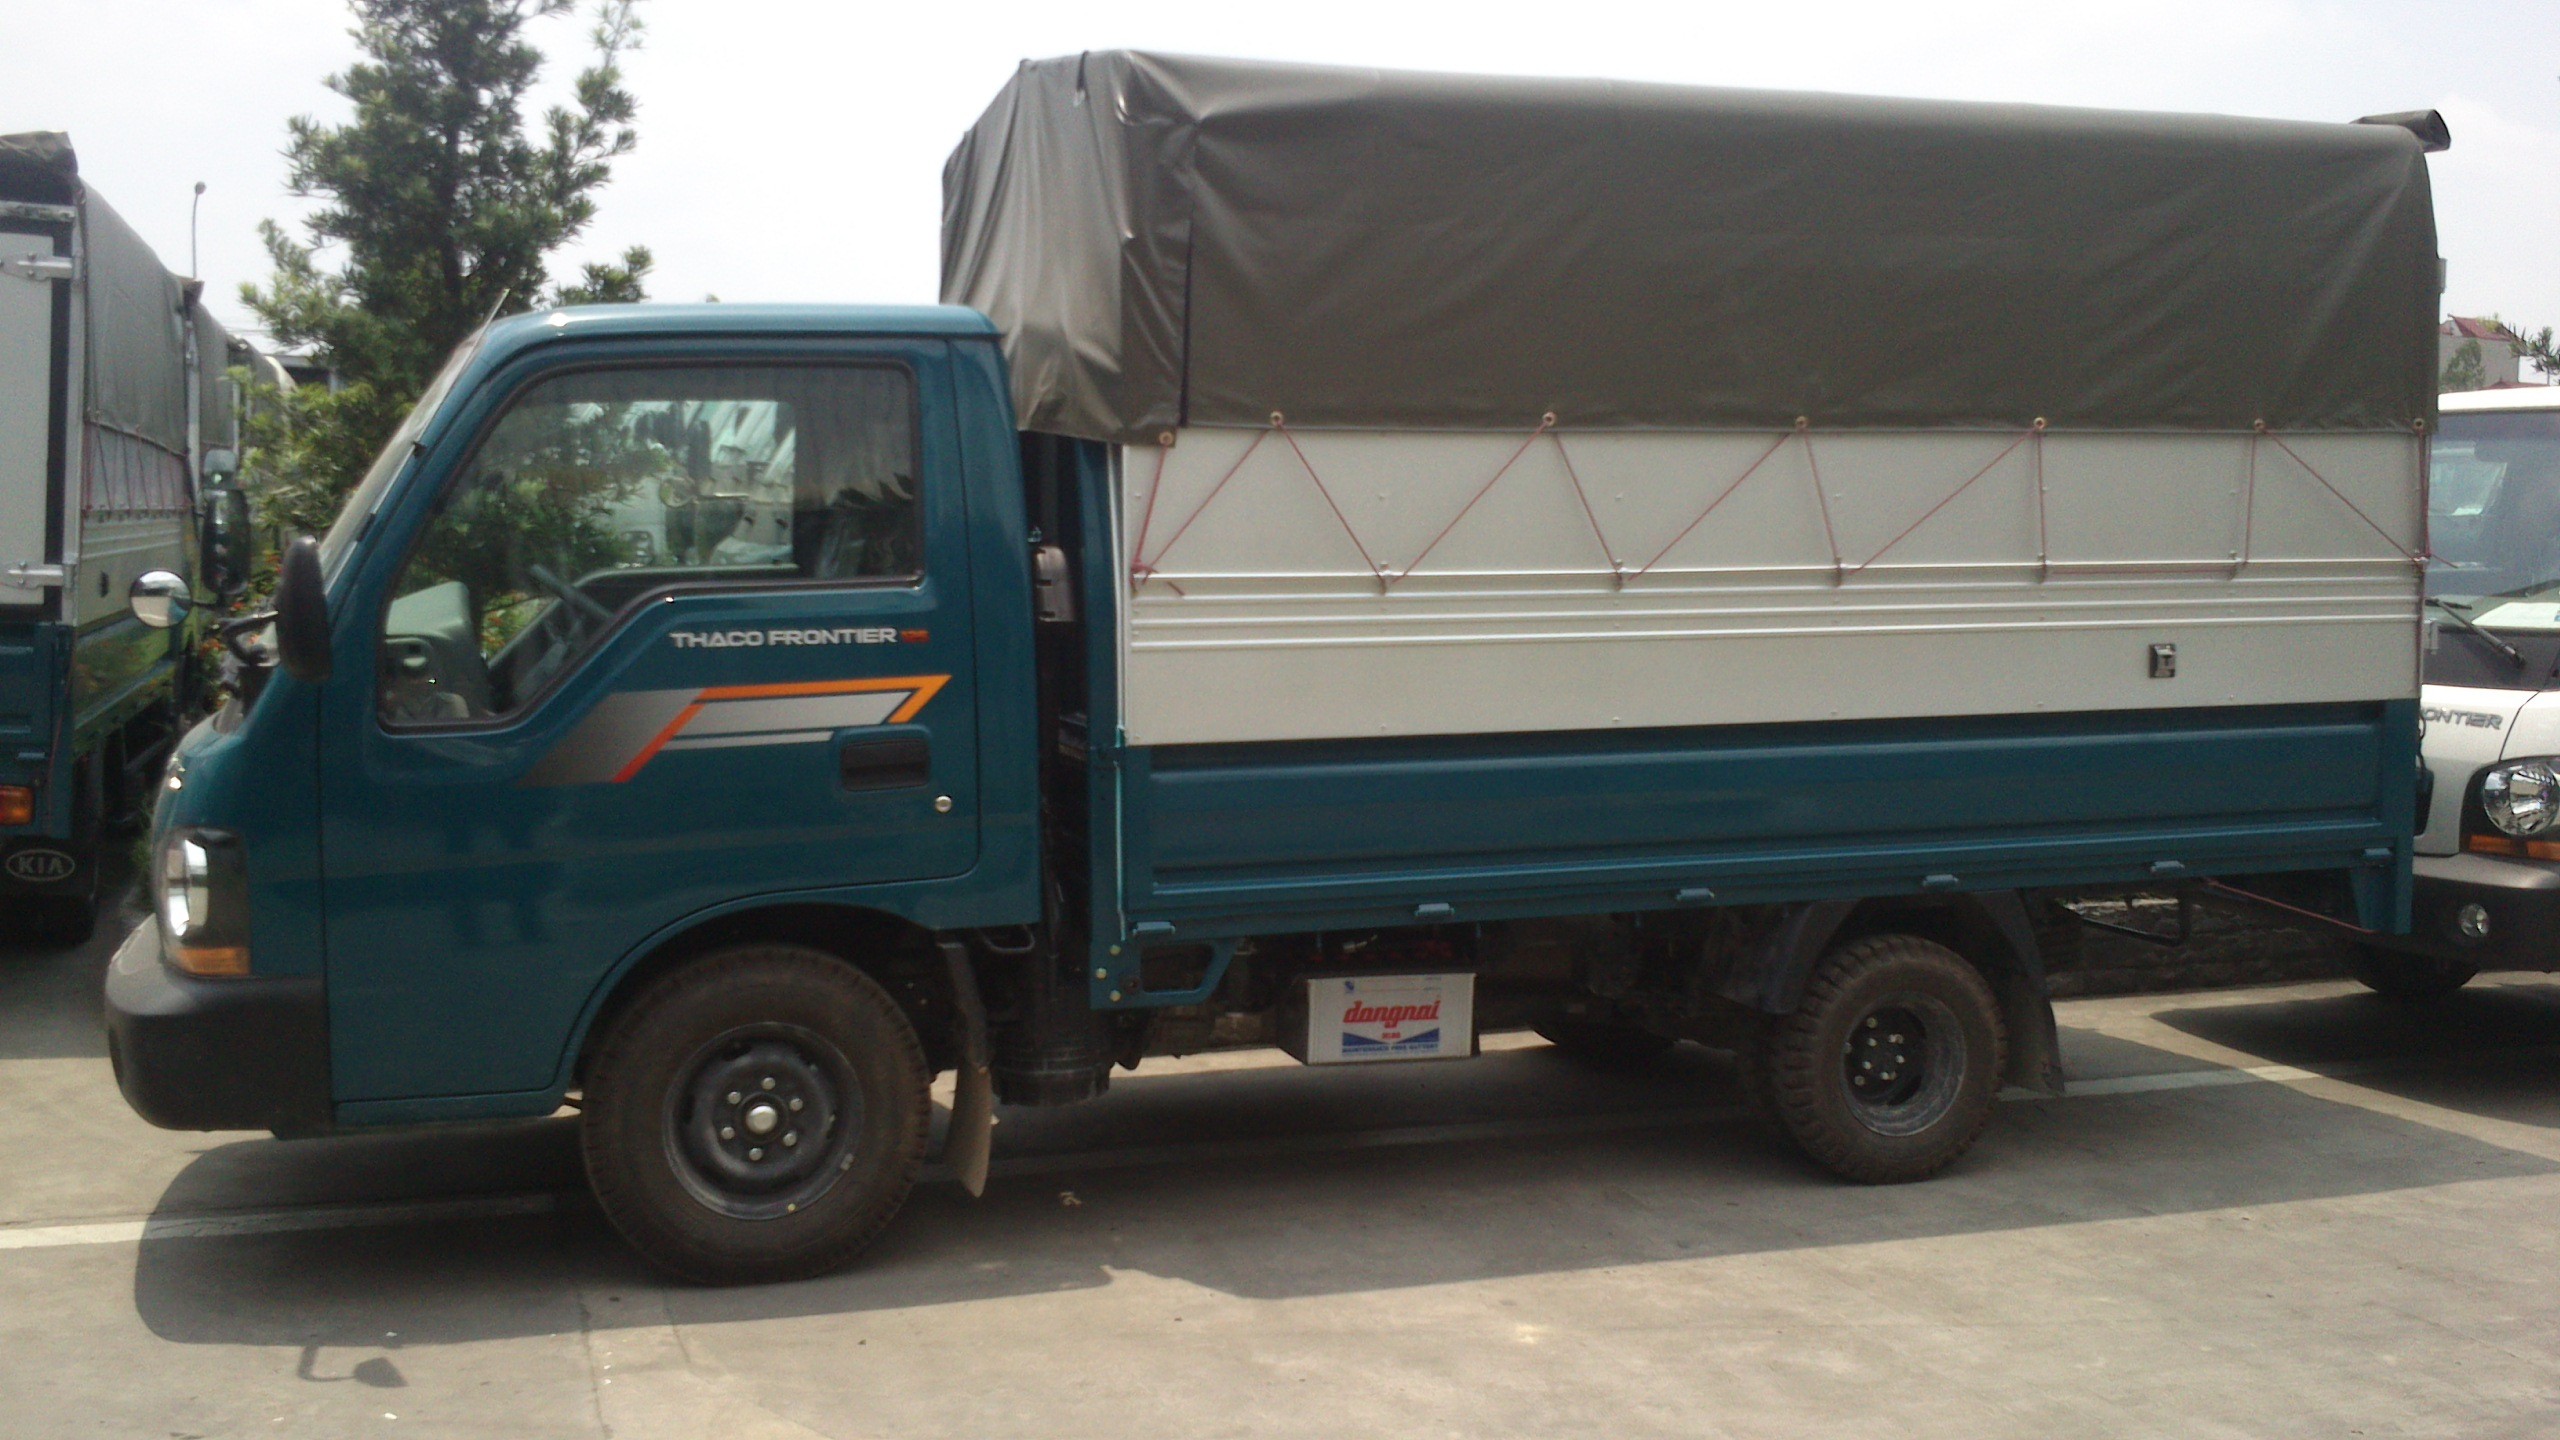 Dịch vụ cho thuê xe tải 1.25 tấn giá rẻ - Đường Việt Sài Gòn